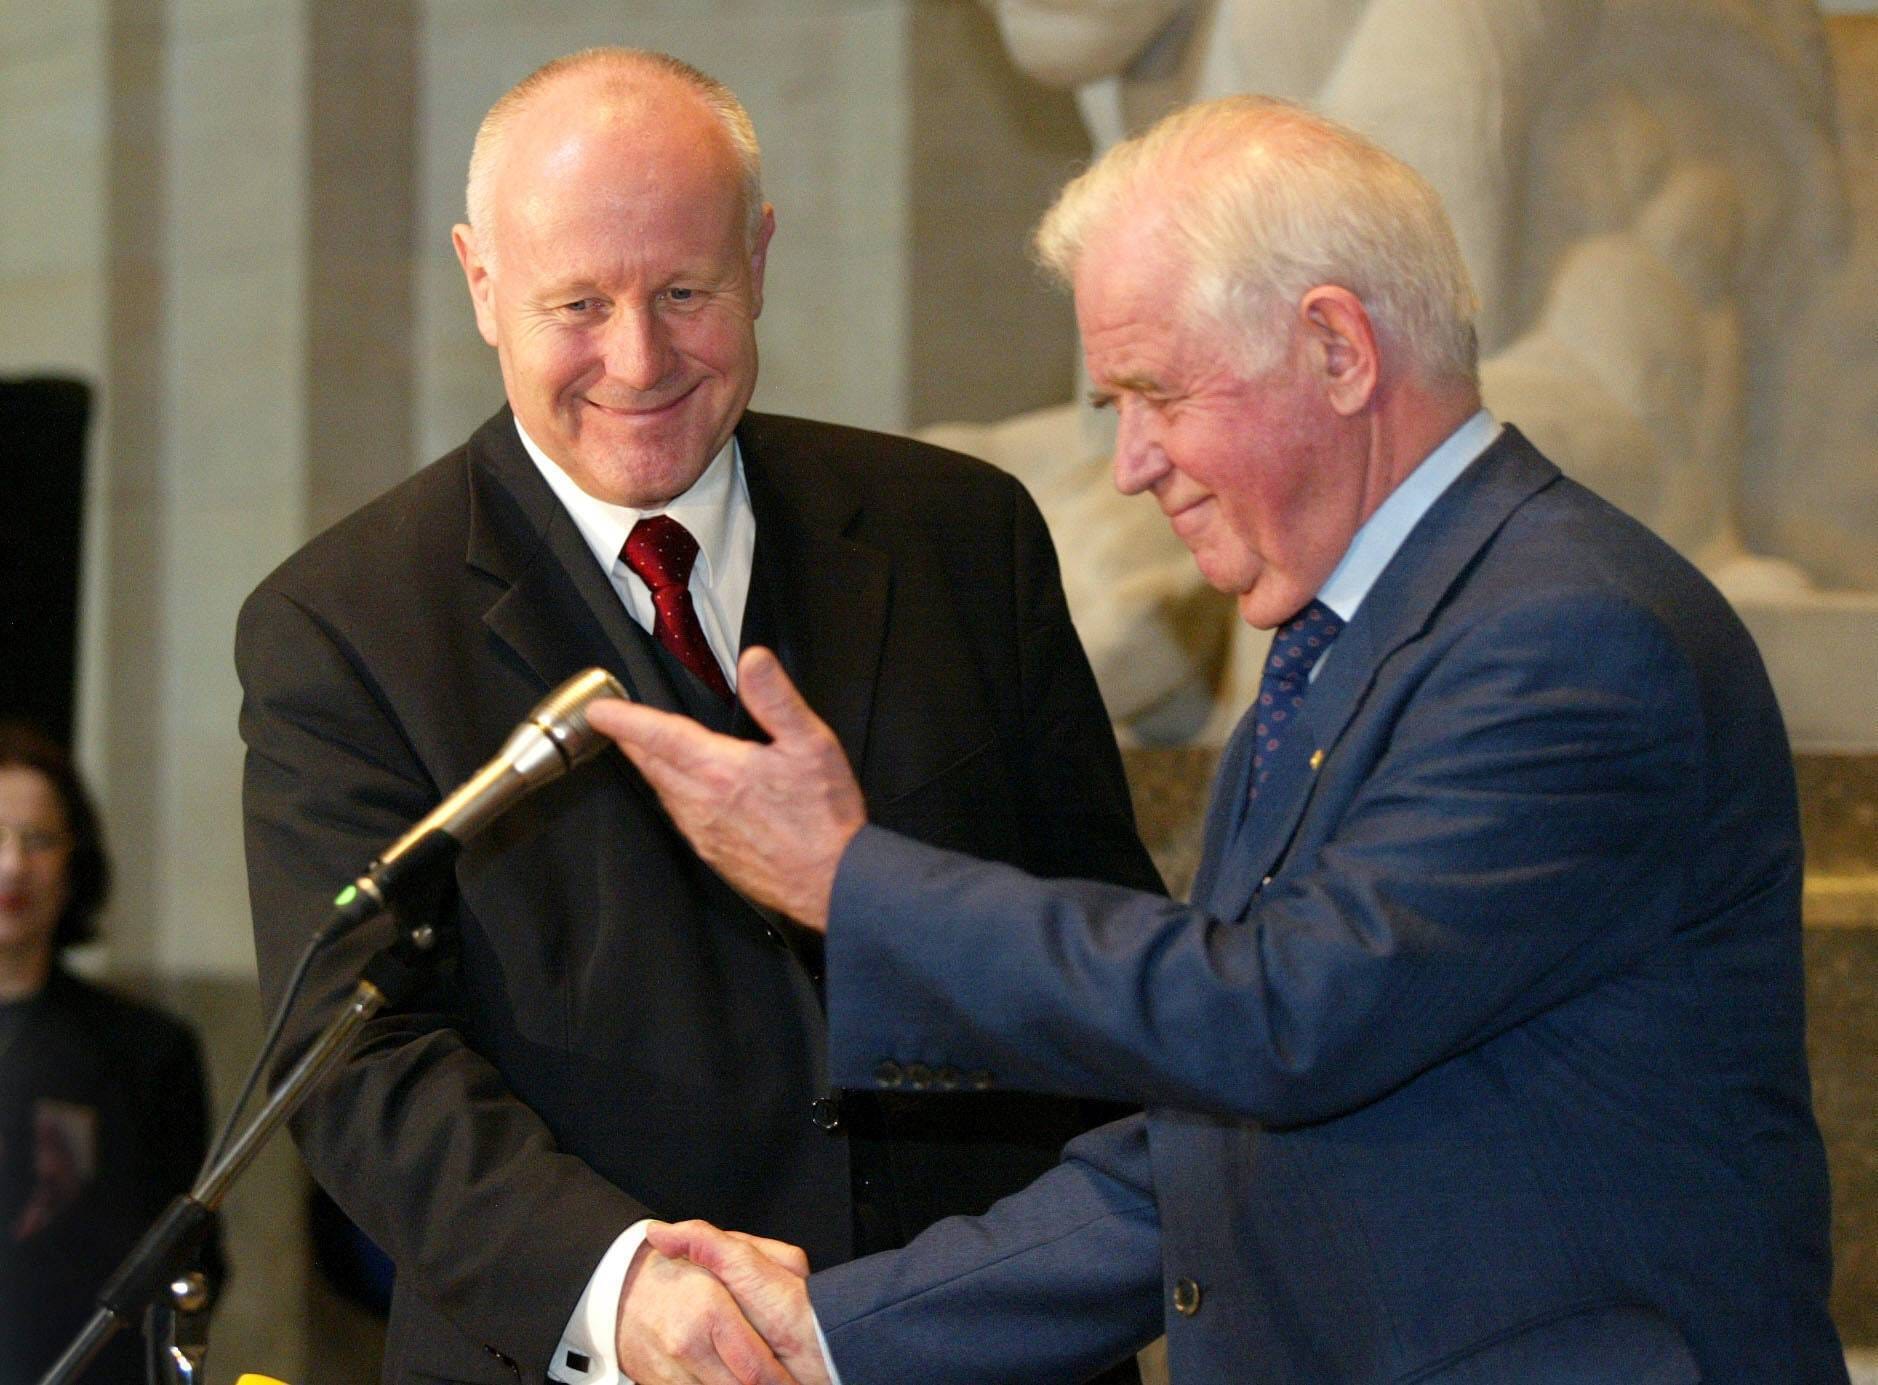 Nach seinem Rücktritt im Jahr 2002 übergibt Kurt Biedenkopf die Amtsgeschäfte als Ministerpräsident offiziell an seinen Parteikollegen Georg Milbradt.